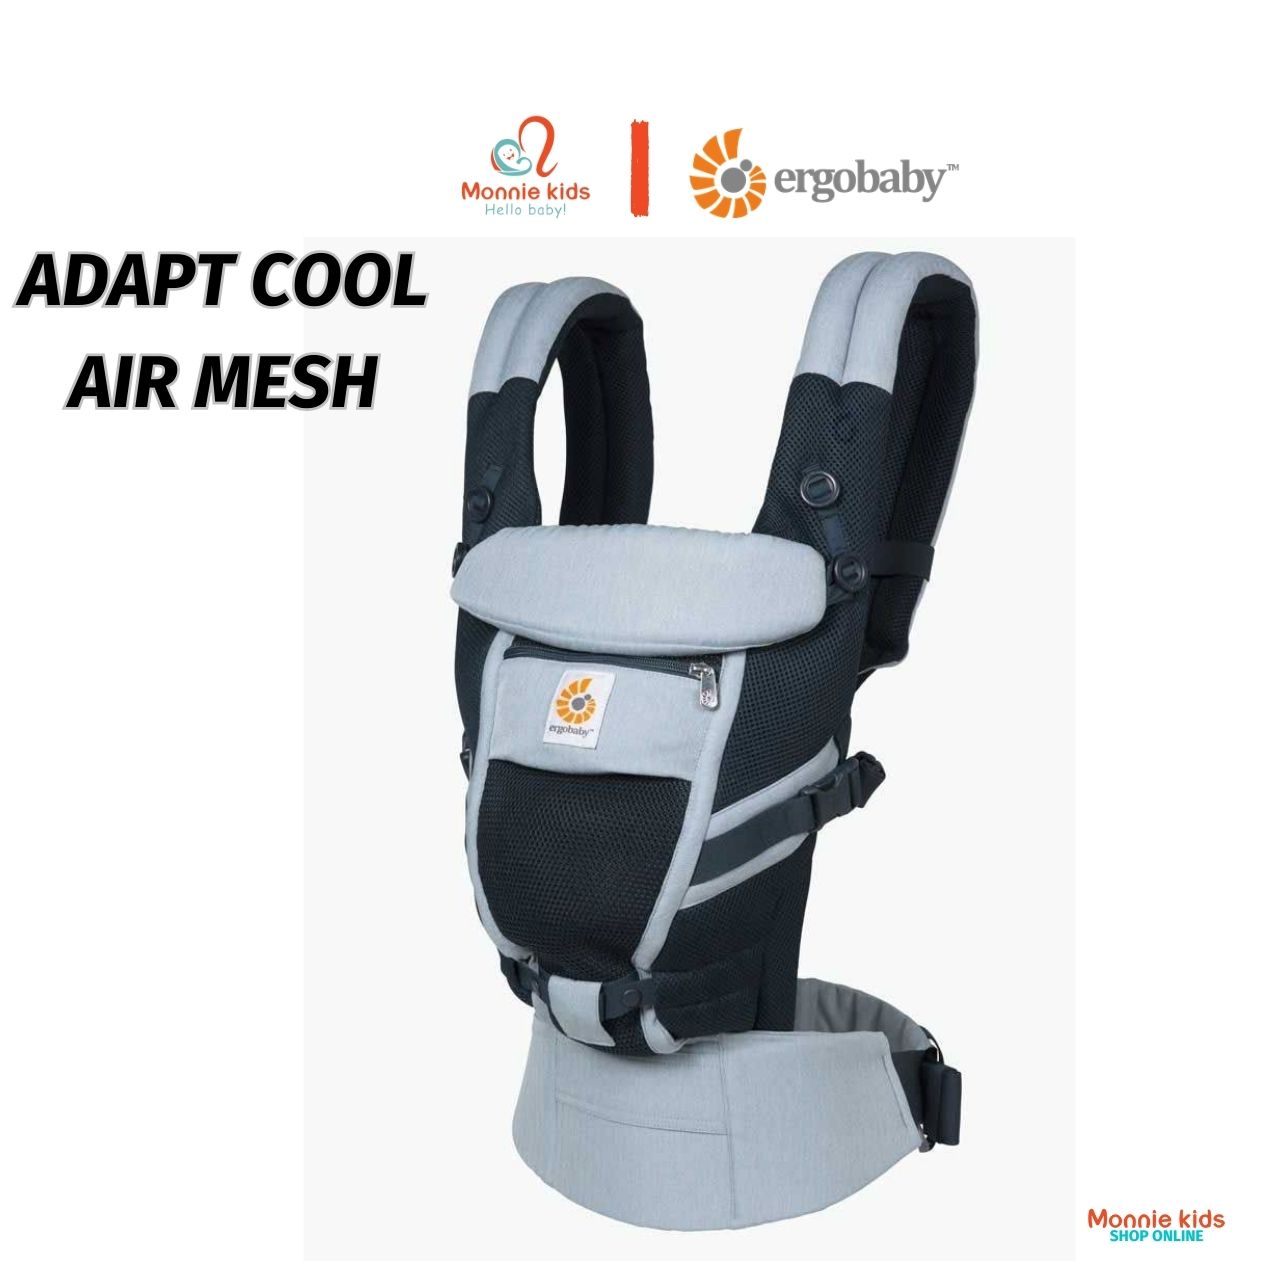 Địu ngồi Ergobaby Adapt Cool Air Mesh cho bé 0m+, đai địu trợ lực 3 tư thế